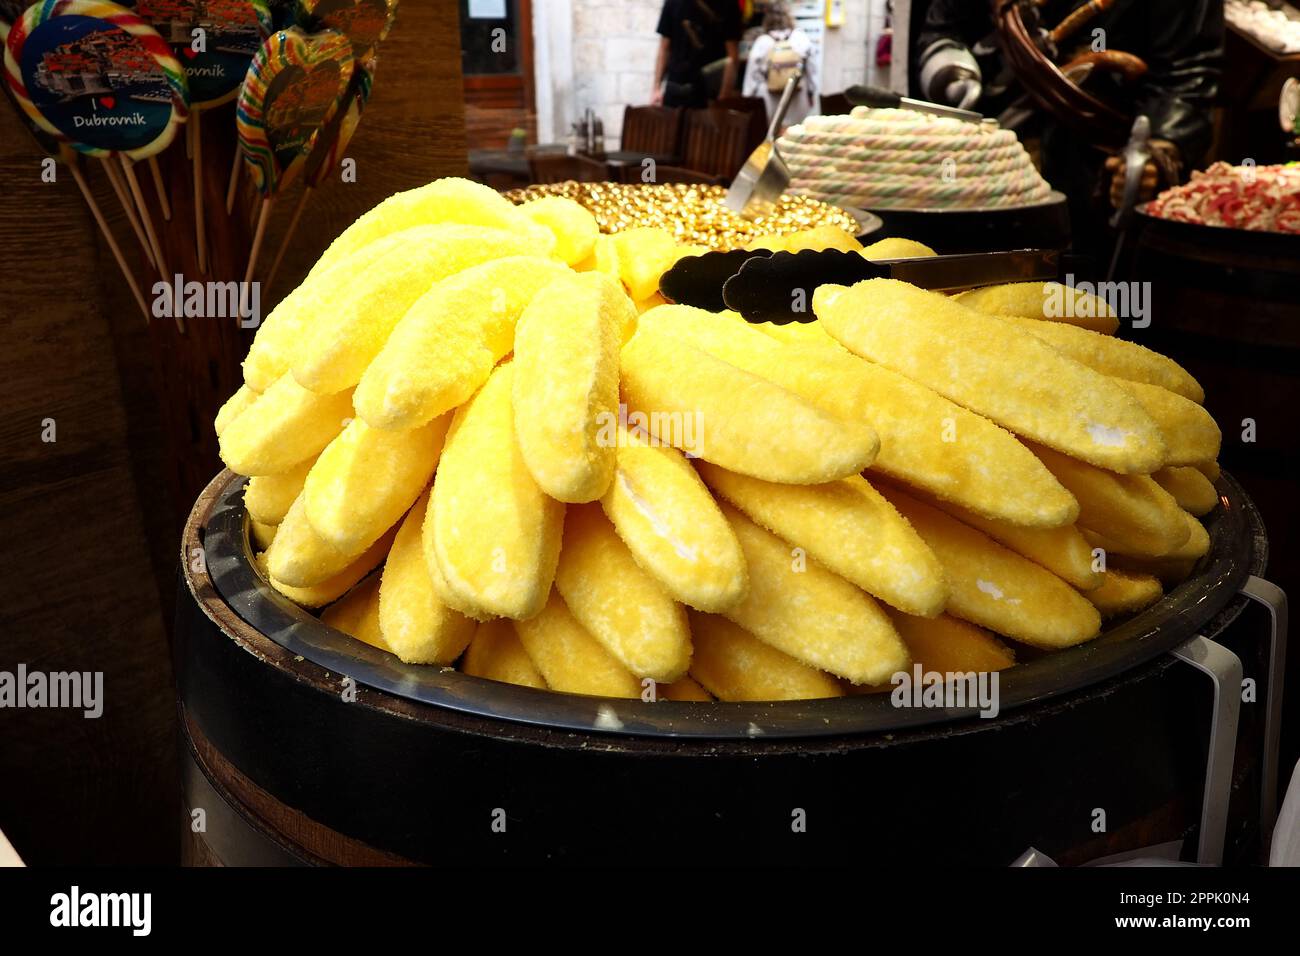 Eclairs in Form von gelben Bananen auf einem Gericht. Ein Schaukasten des Süßigkeitenladens Dubrovnik Croatia. Leckere süße Kuchen werden Touristen zum Verkauf angeboten. Ungewöhnliche Form des Backens mit pulvergelbem Zucker. Stockfoto